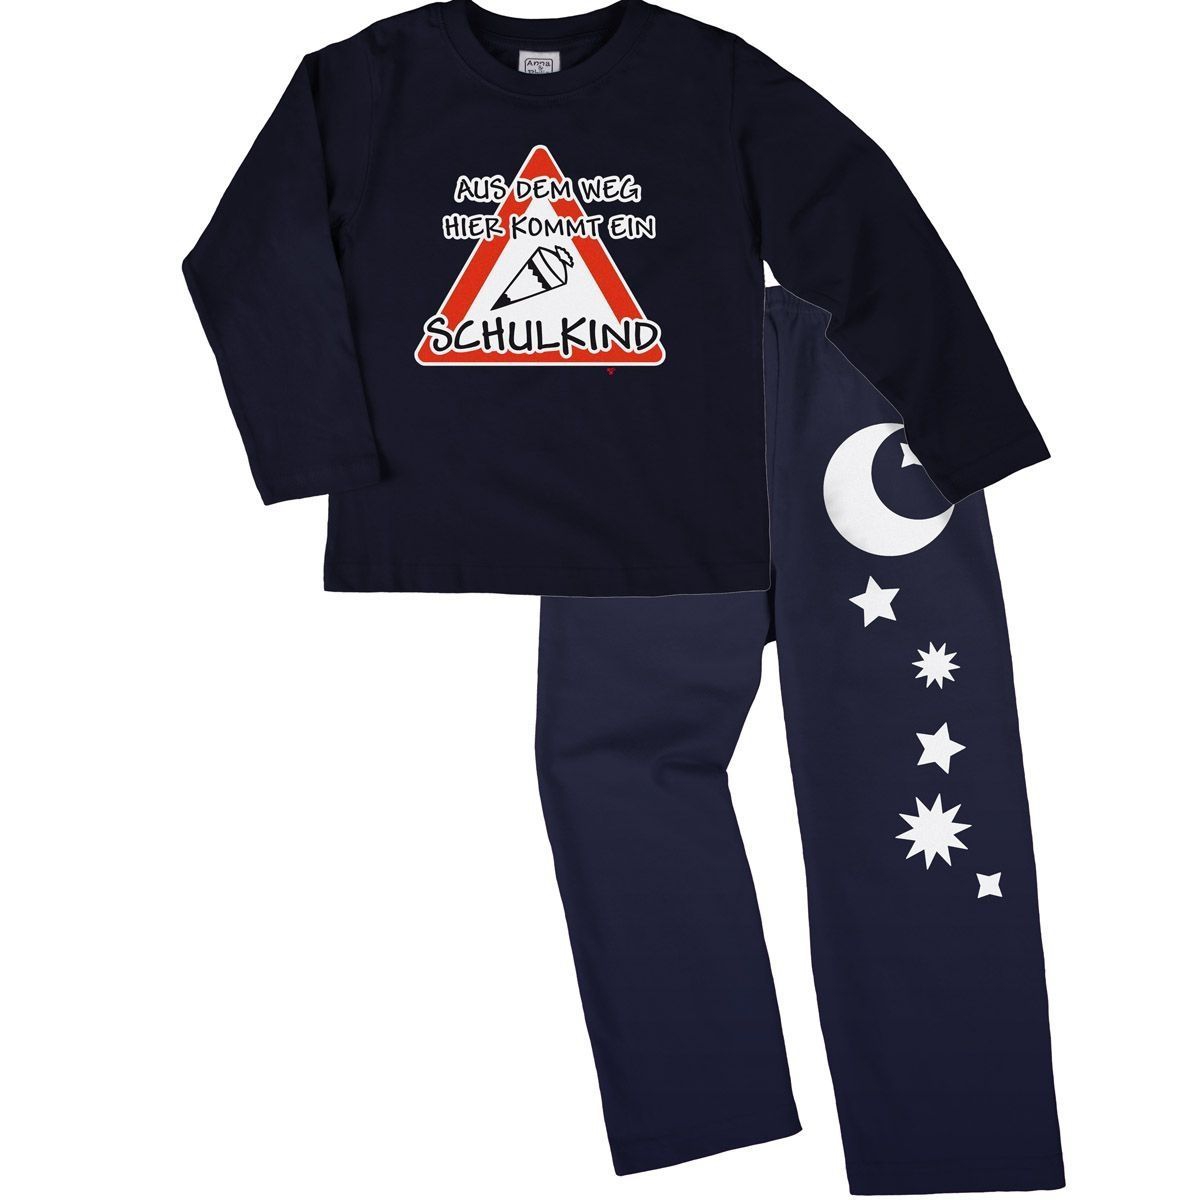 Kommt ein Schulkind Pyjama Set navy / navy 122 / 128